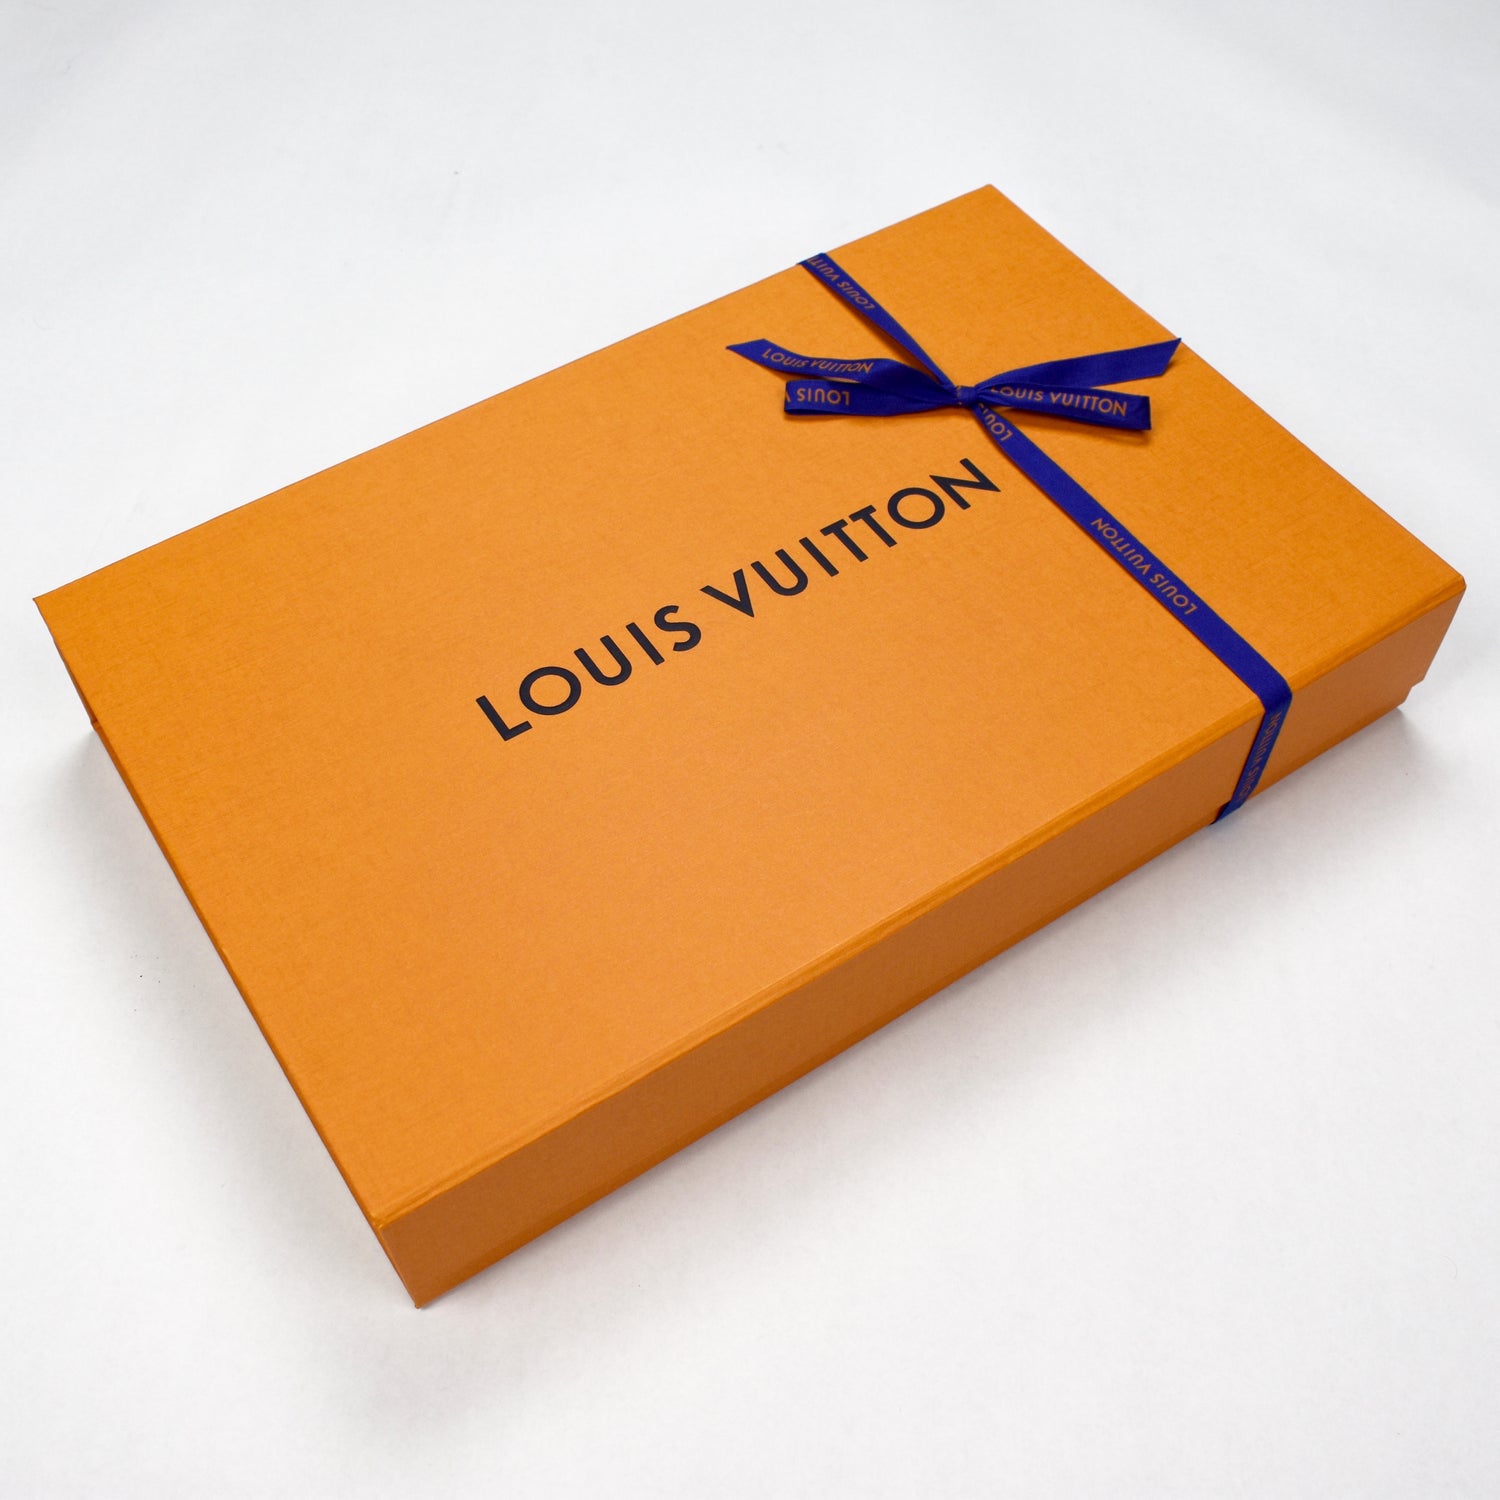 Louis Vuitton x Supreme 2017 Box Logo T-Shirt S